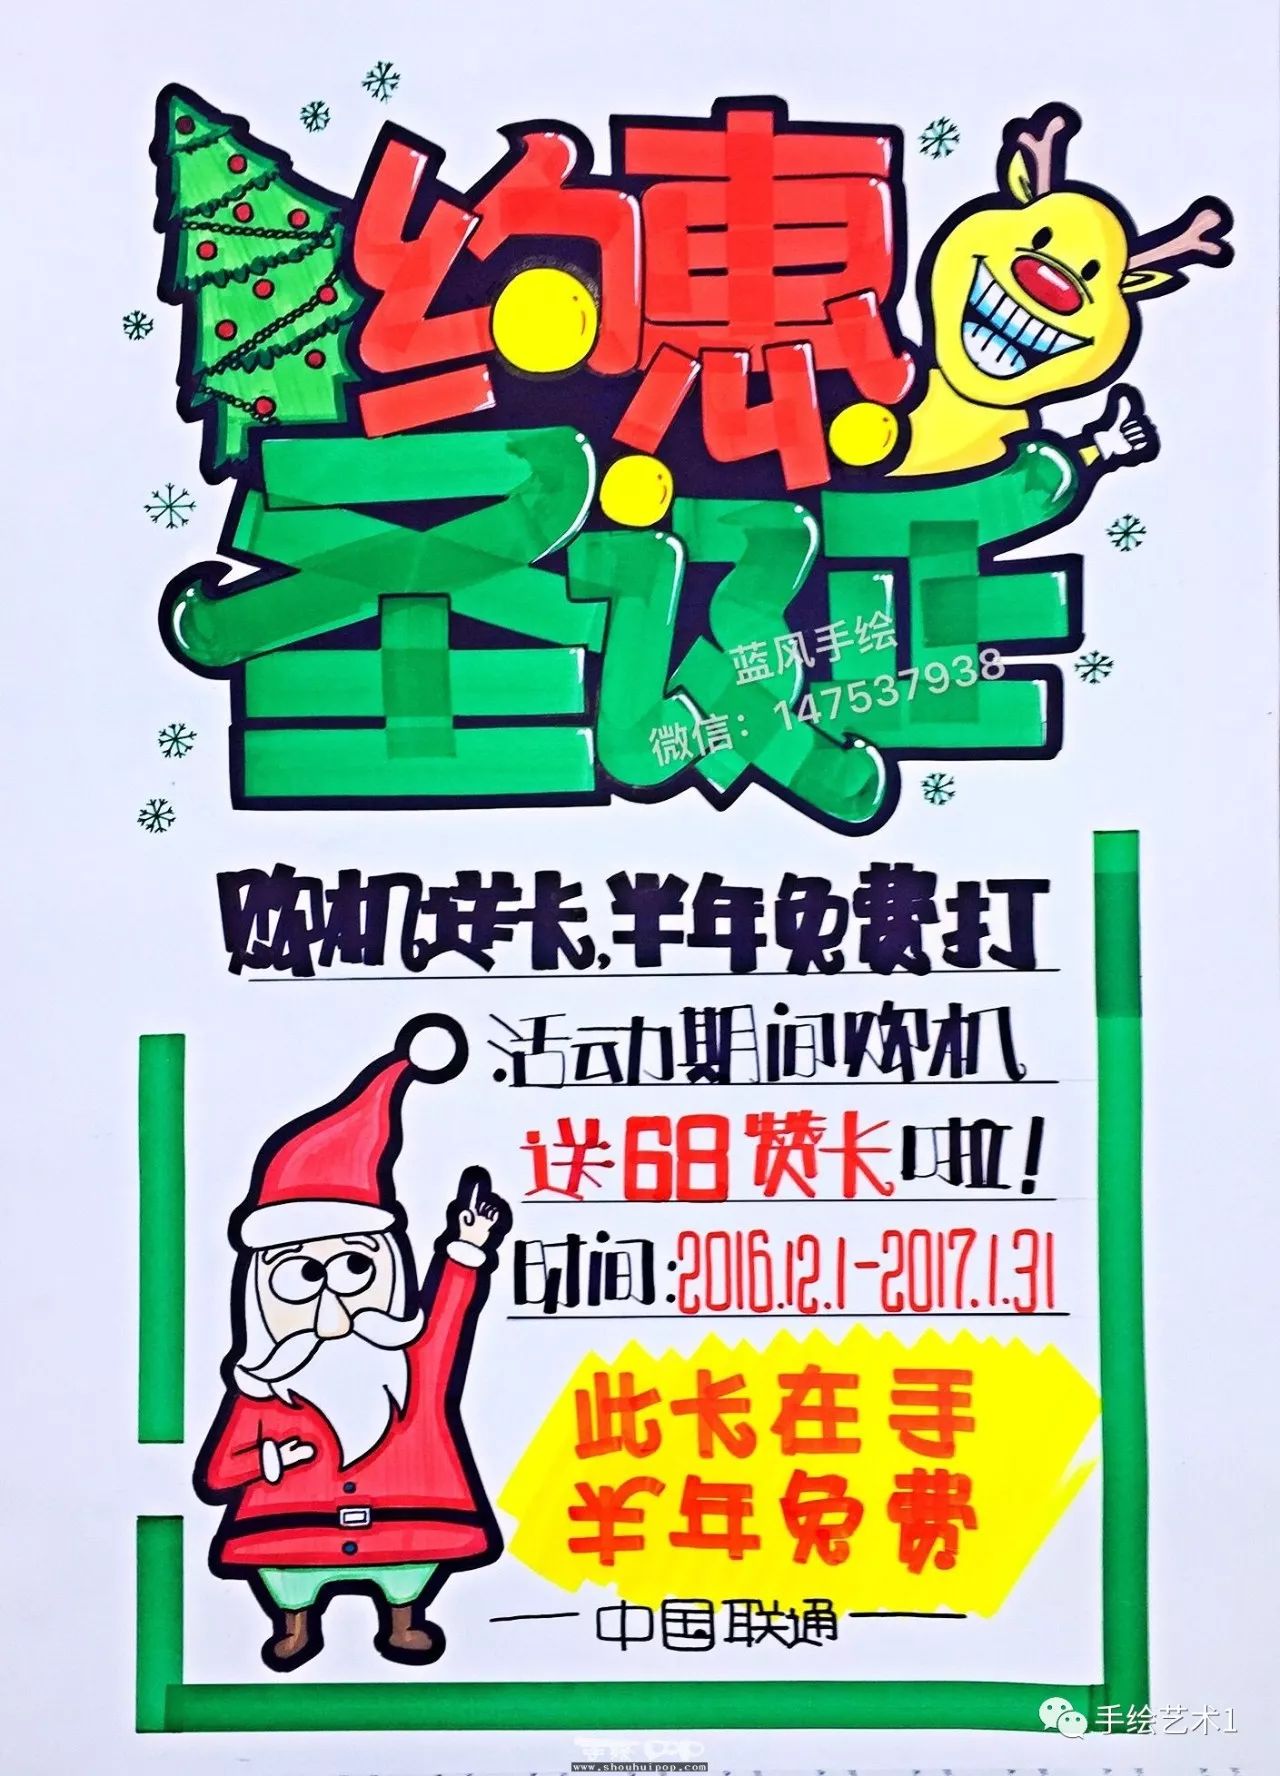 【手绘pop海报】圣诞快乐相关海报,收集出多幅的,希望给大家一些参考